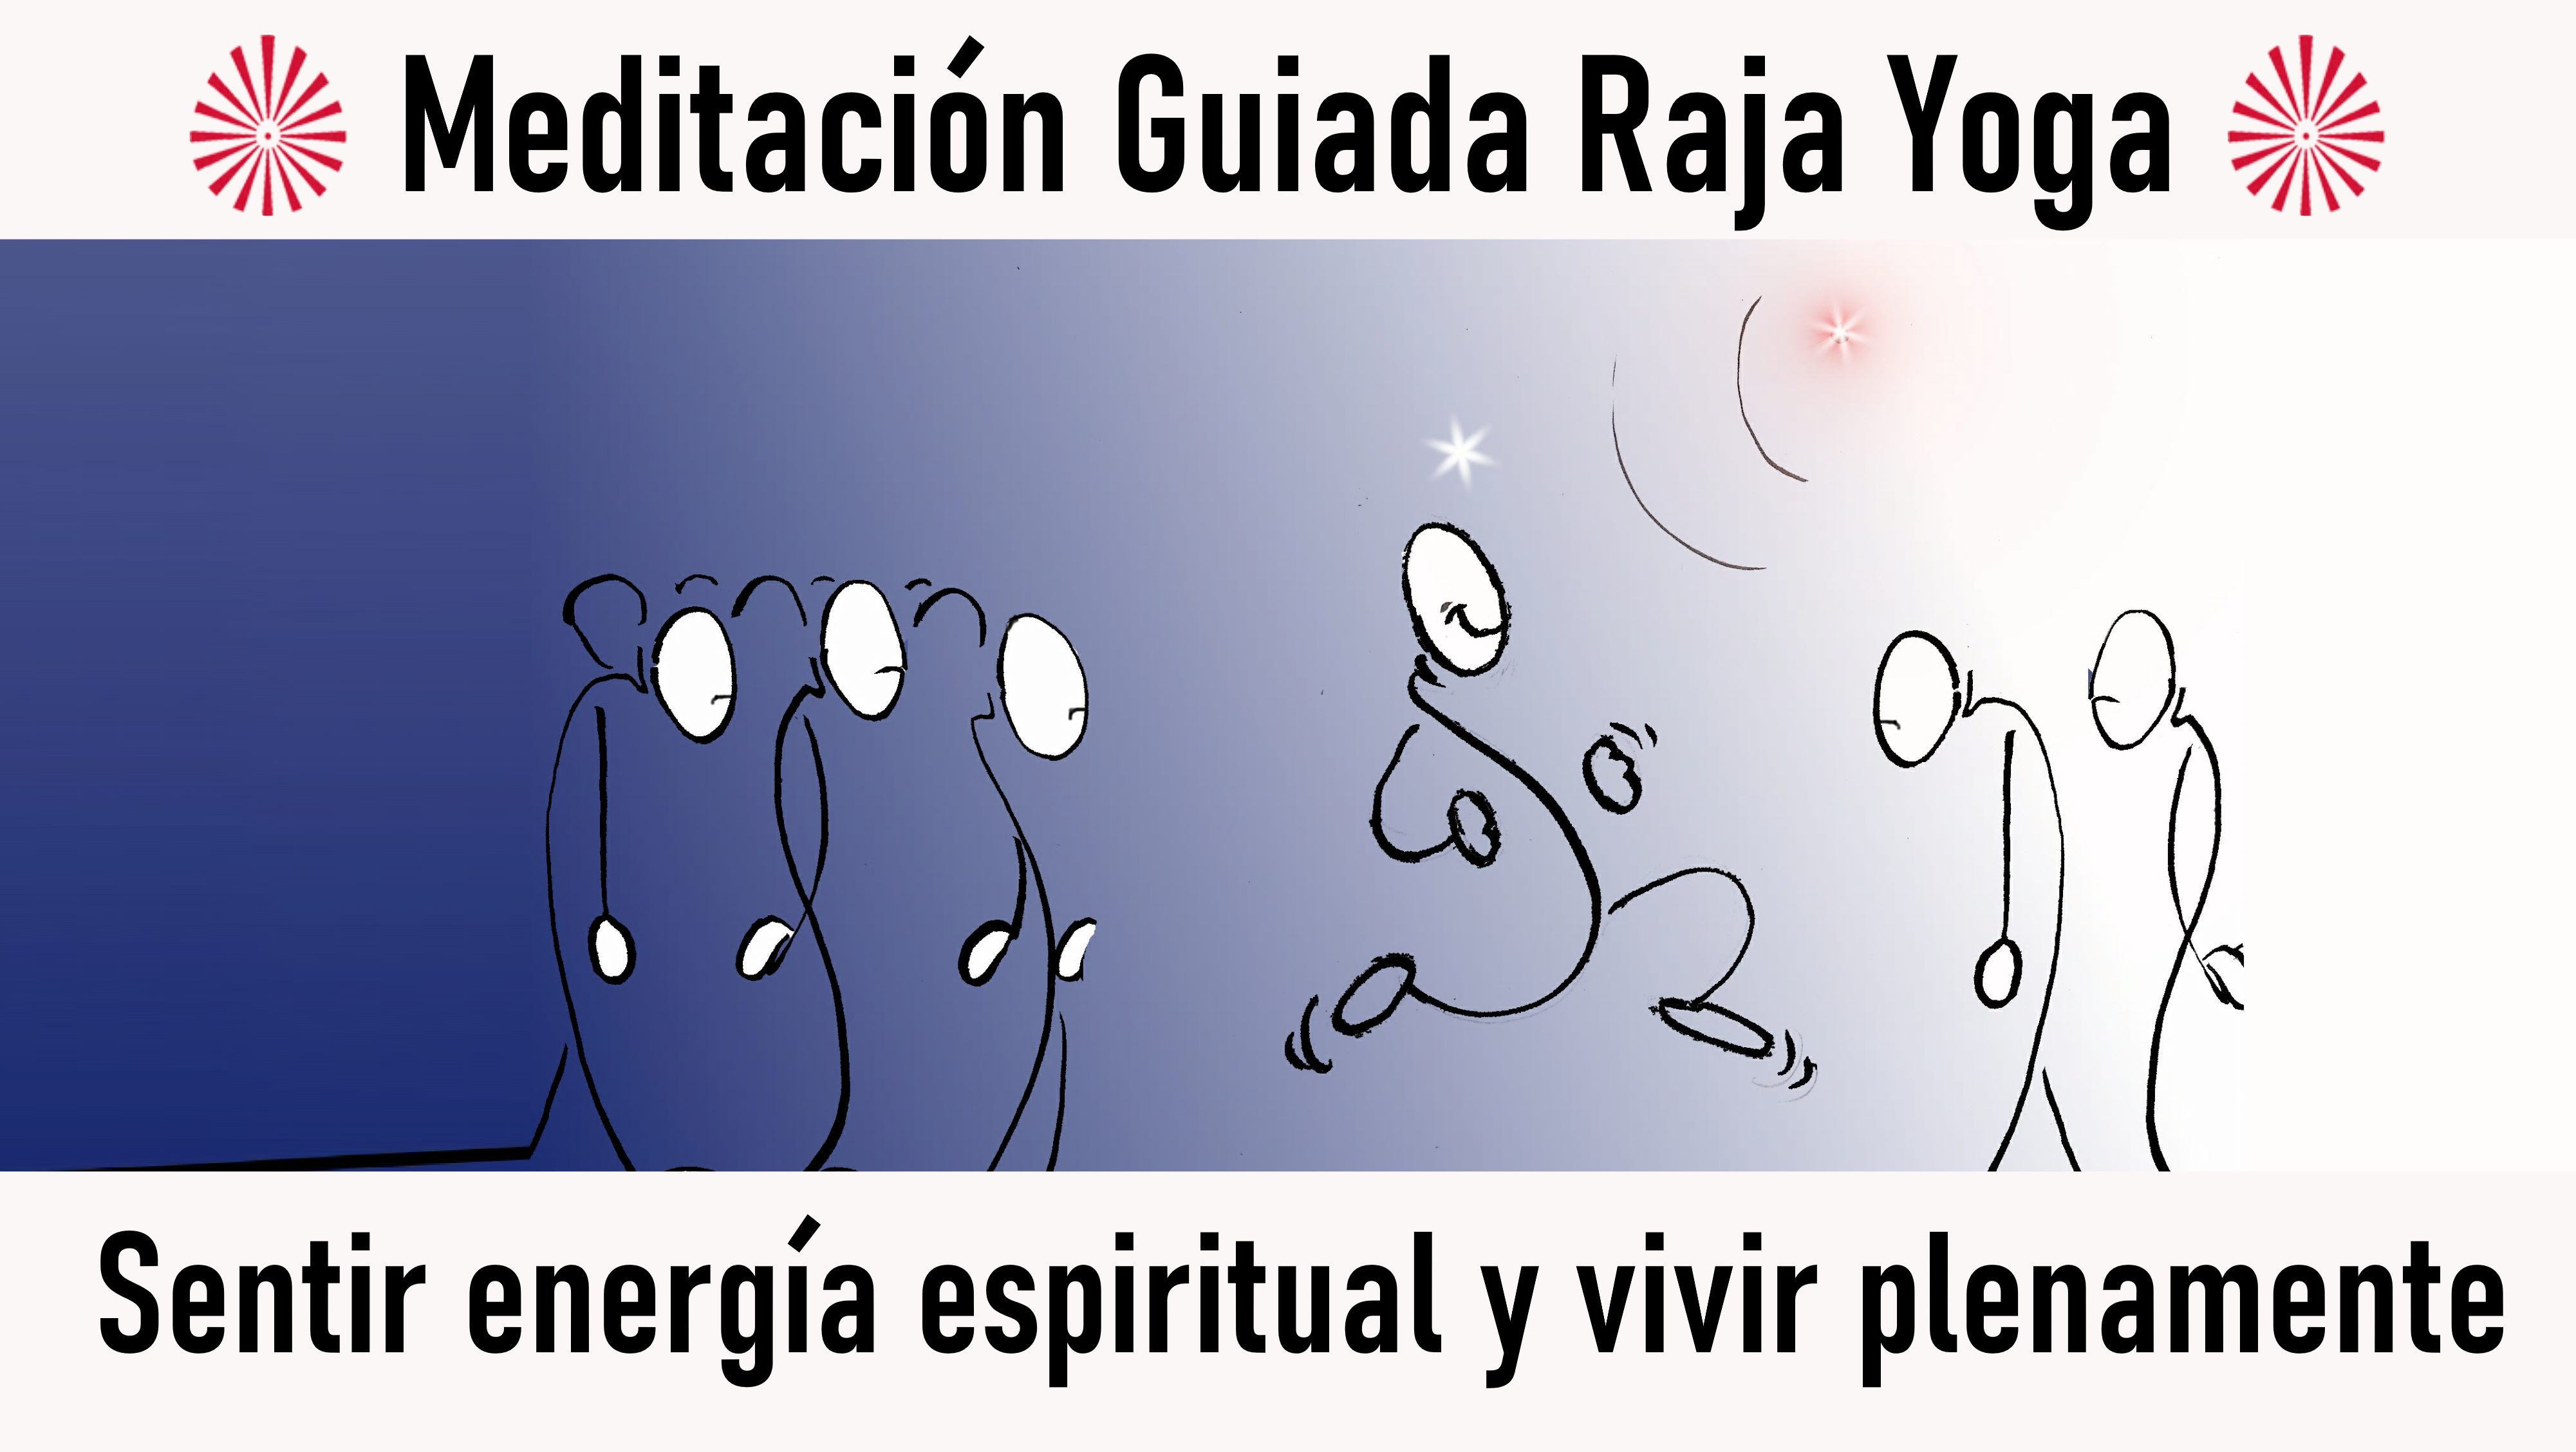 17 Octubre 2020 Meditación guiada: Sentir energía espiritual y vivir plenamente